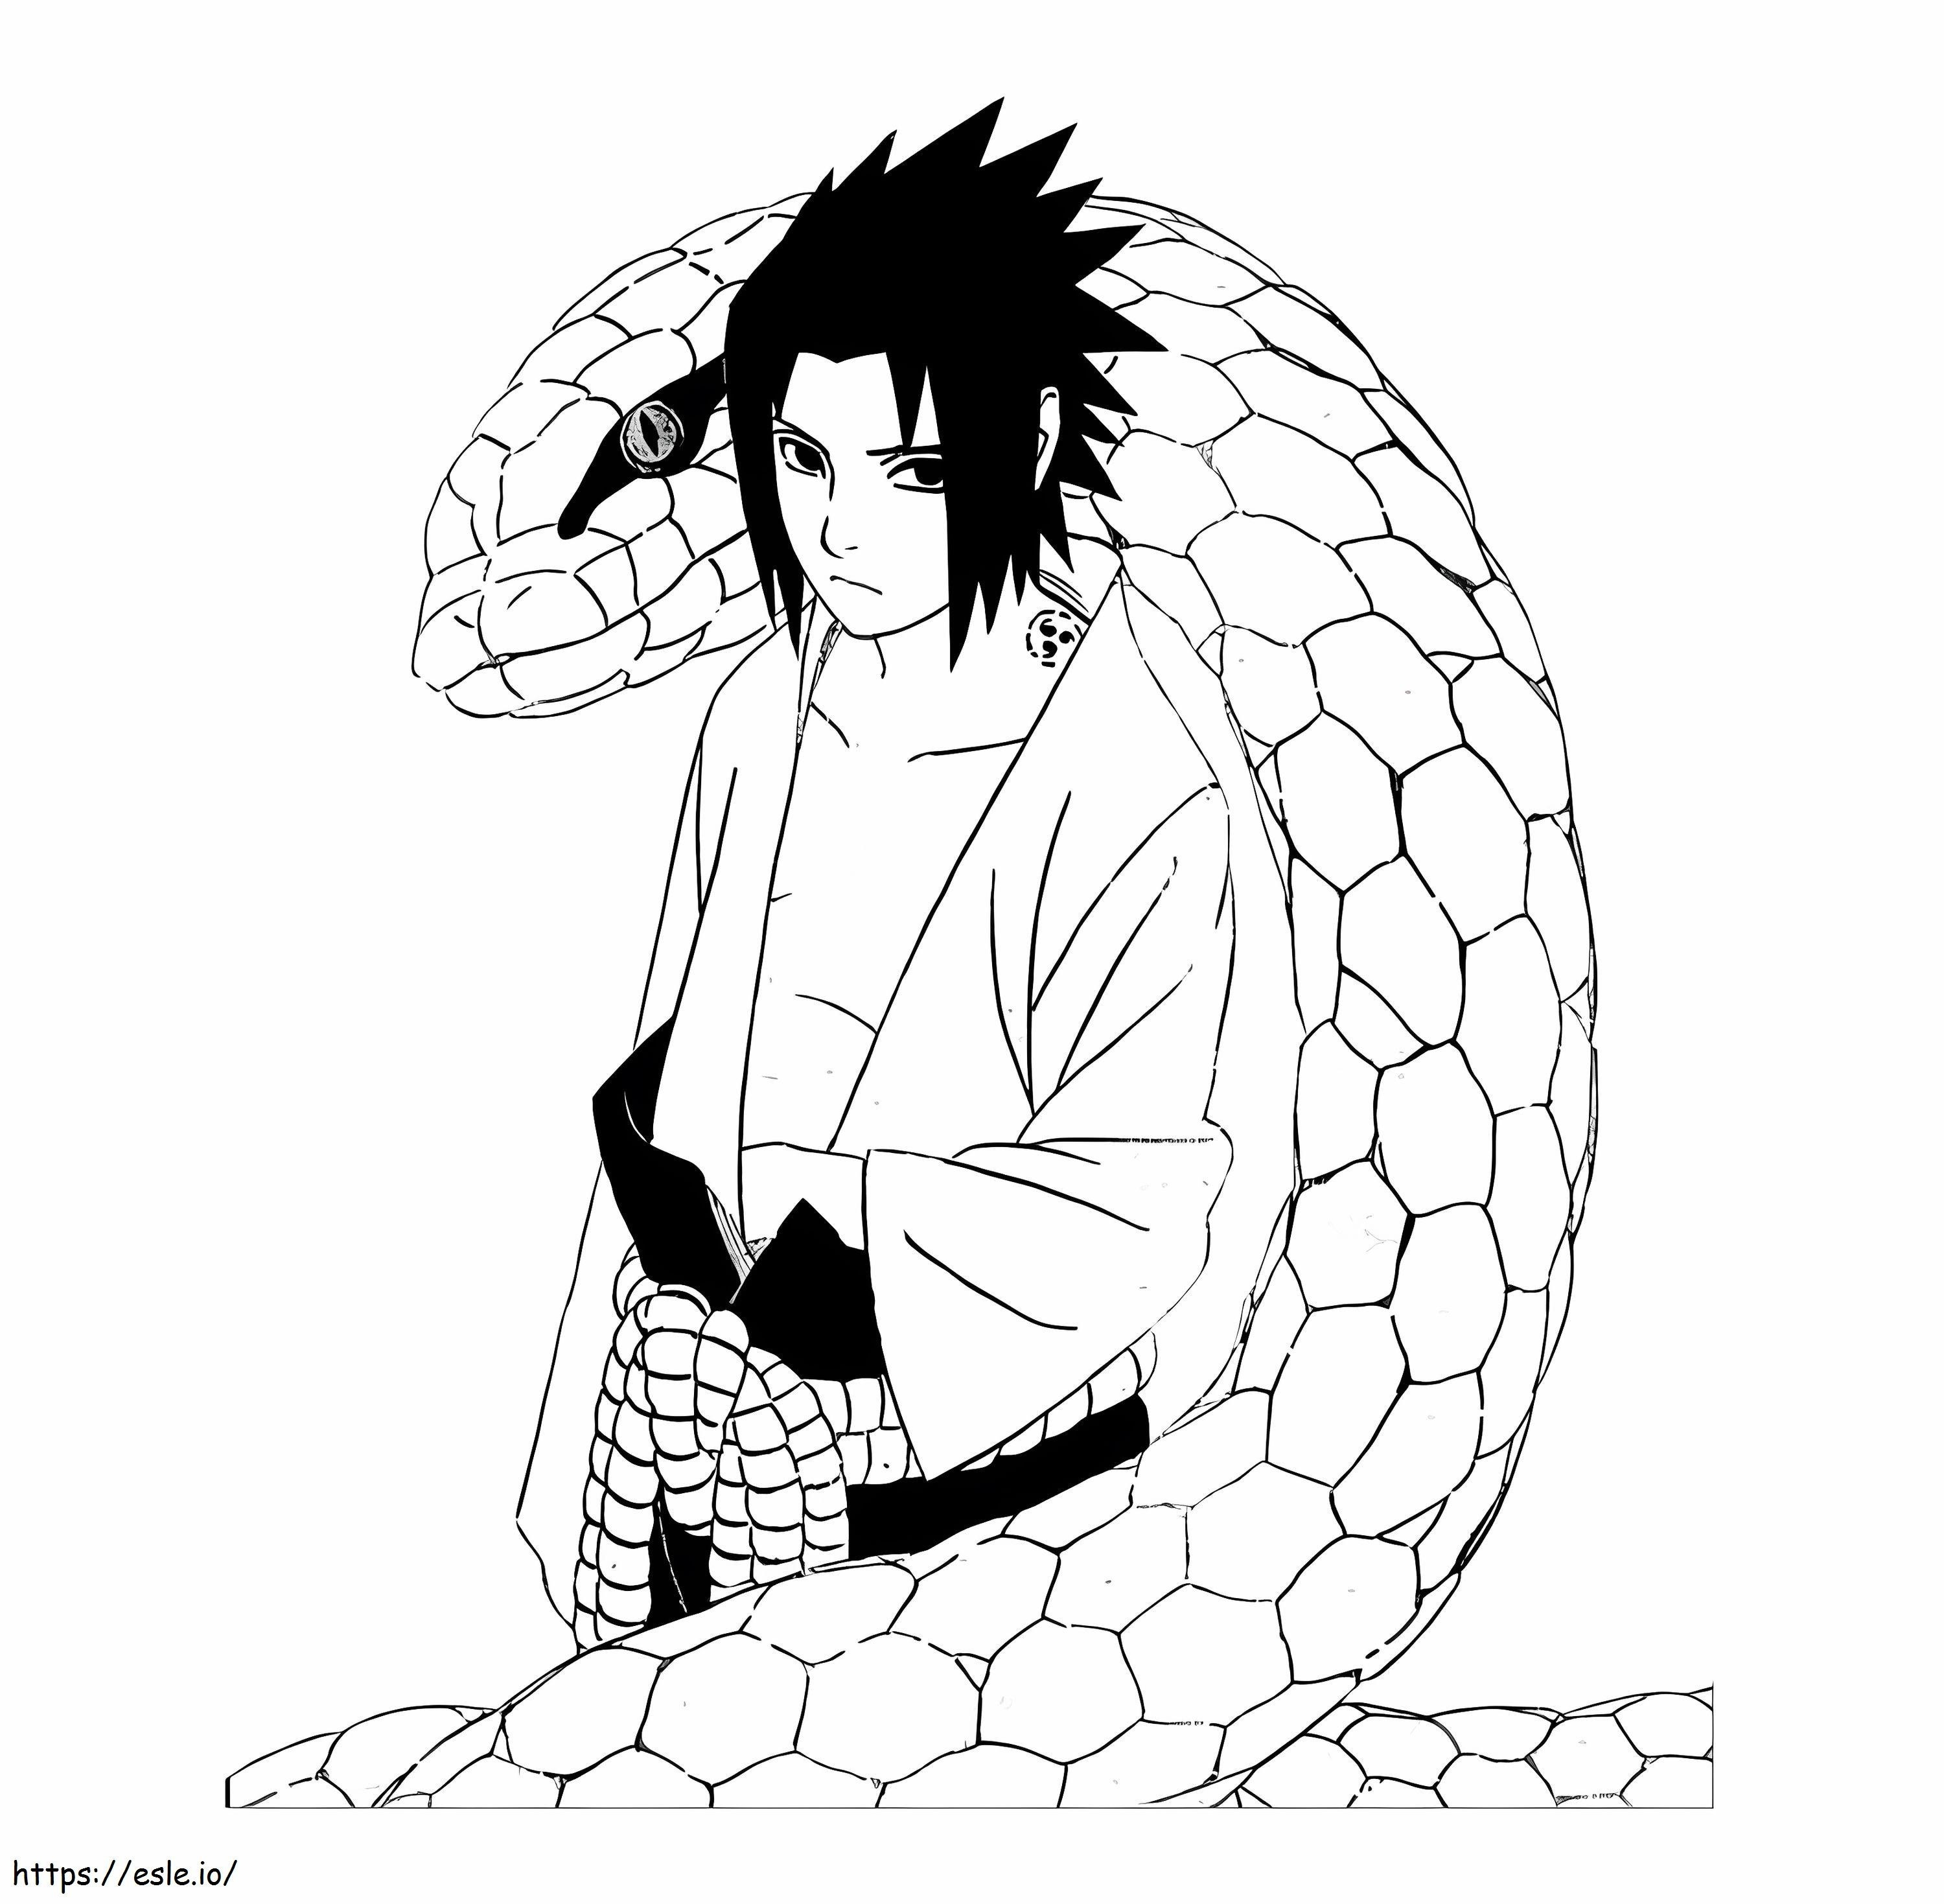 Sasuke i Wielki Wąż kolorowanka